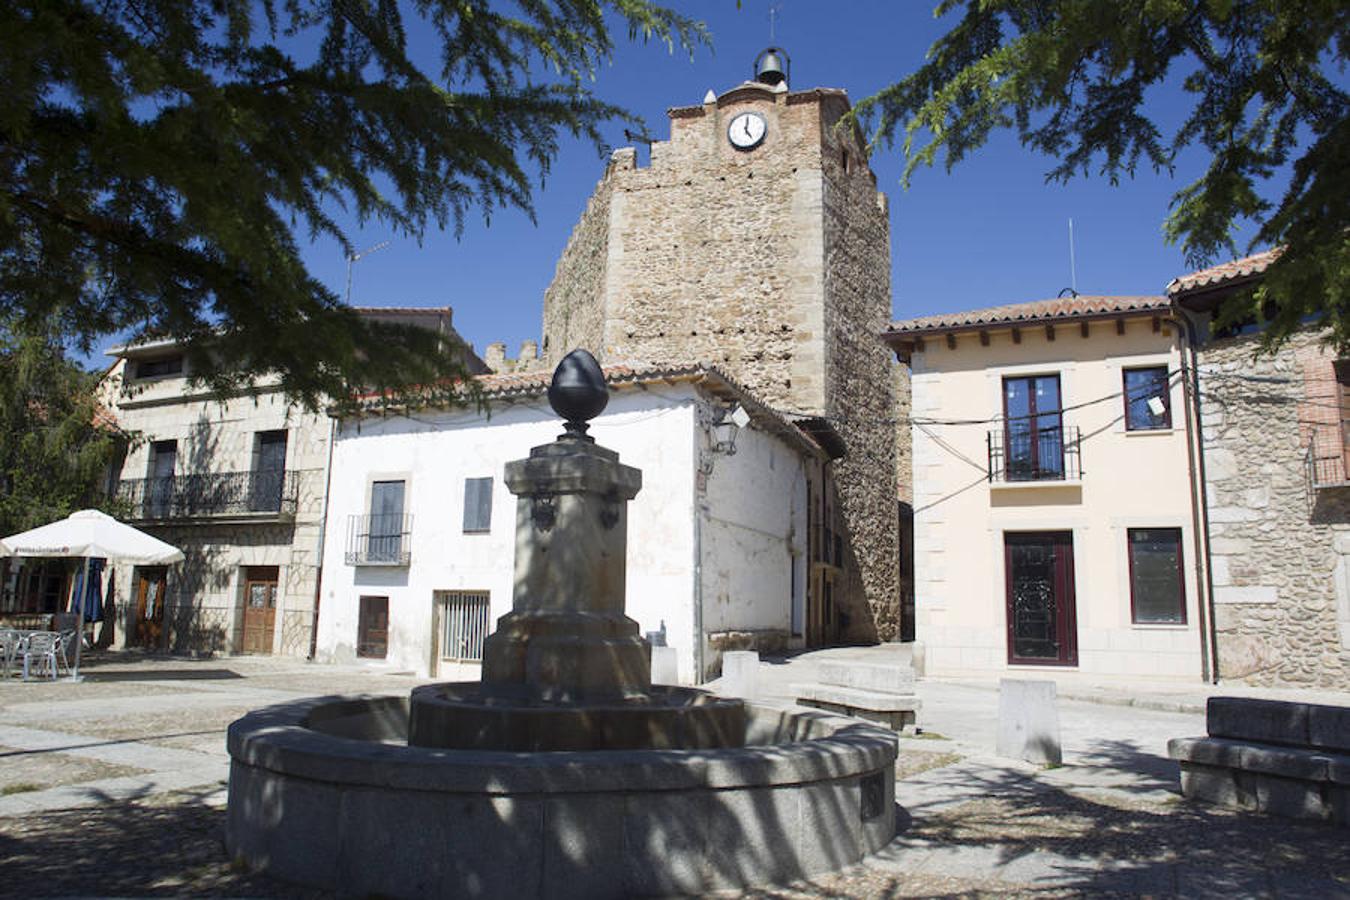 5. Plaza de la Constitución y torre del reloj de Buitrago de Lozoya